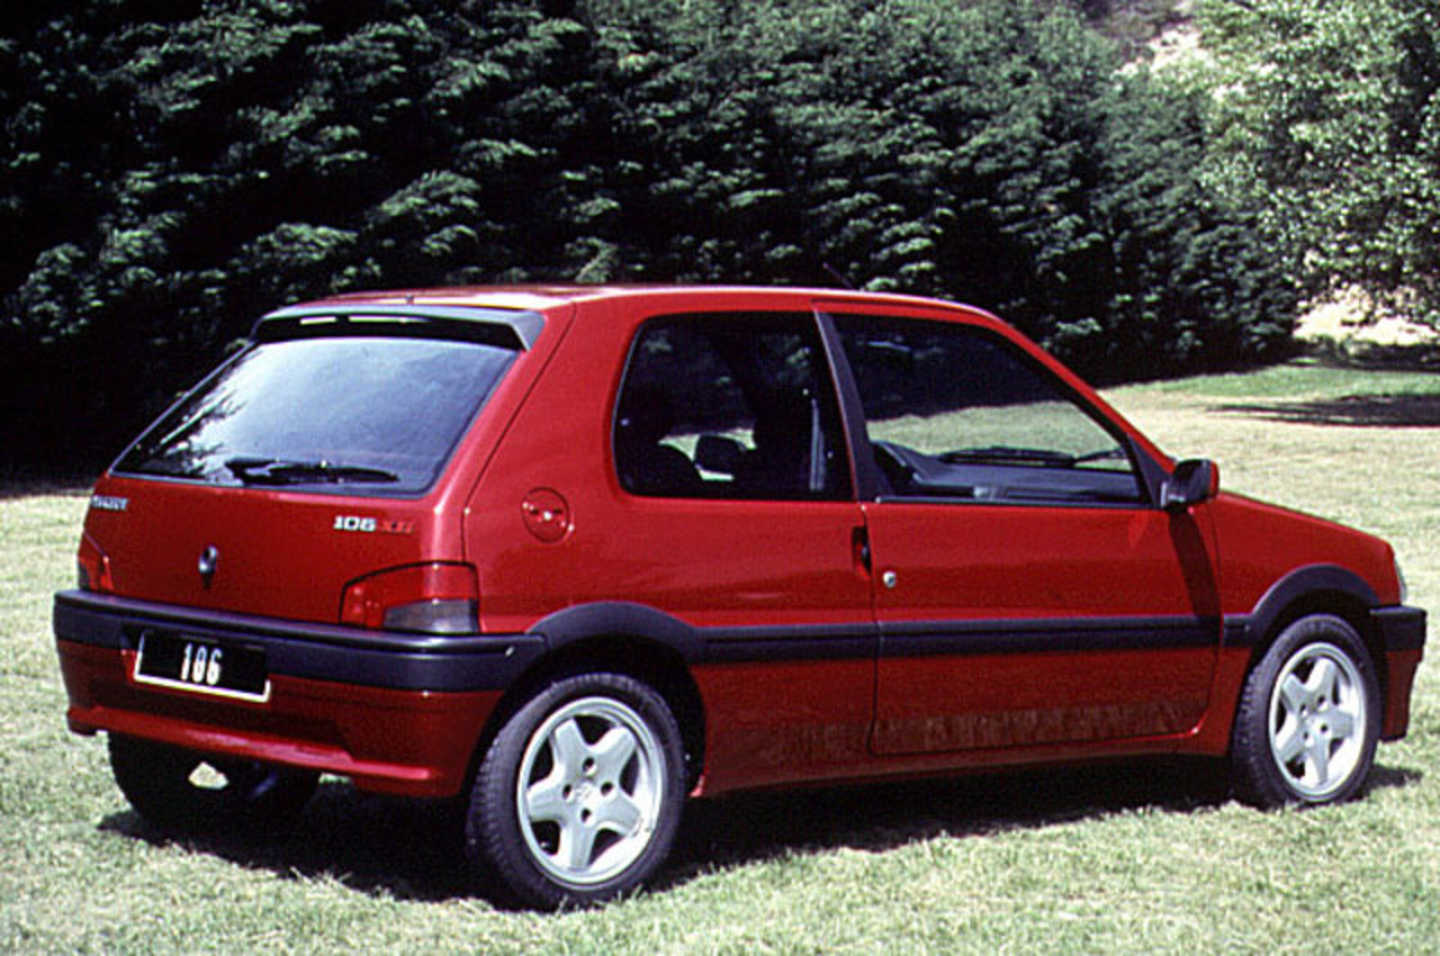 Peugeot 106 XSI rouge de trois quarts arrière